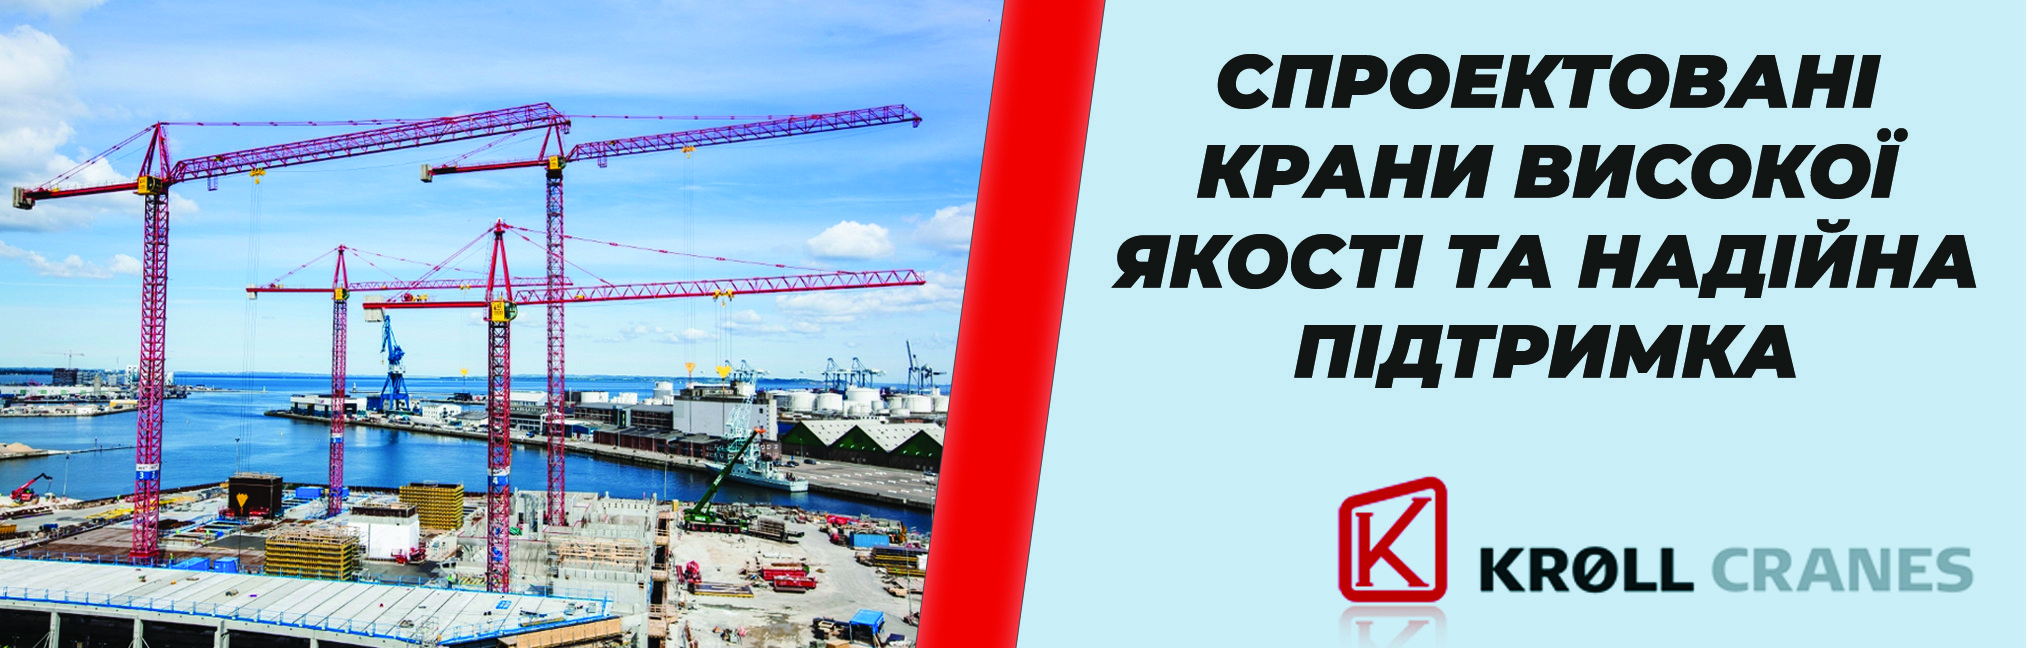 https://enerprof-building.com.ua/product-category/kroll-cranes/